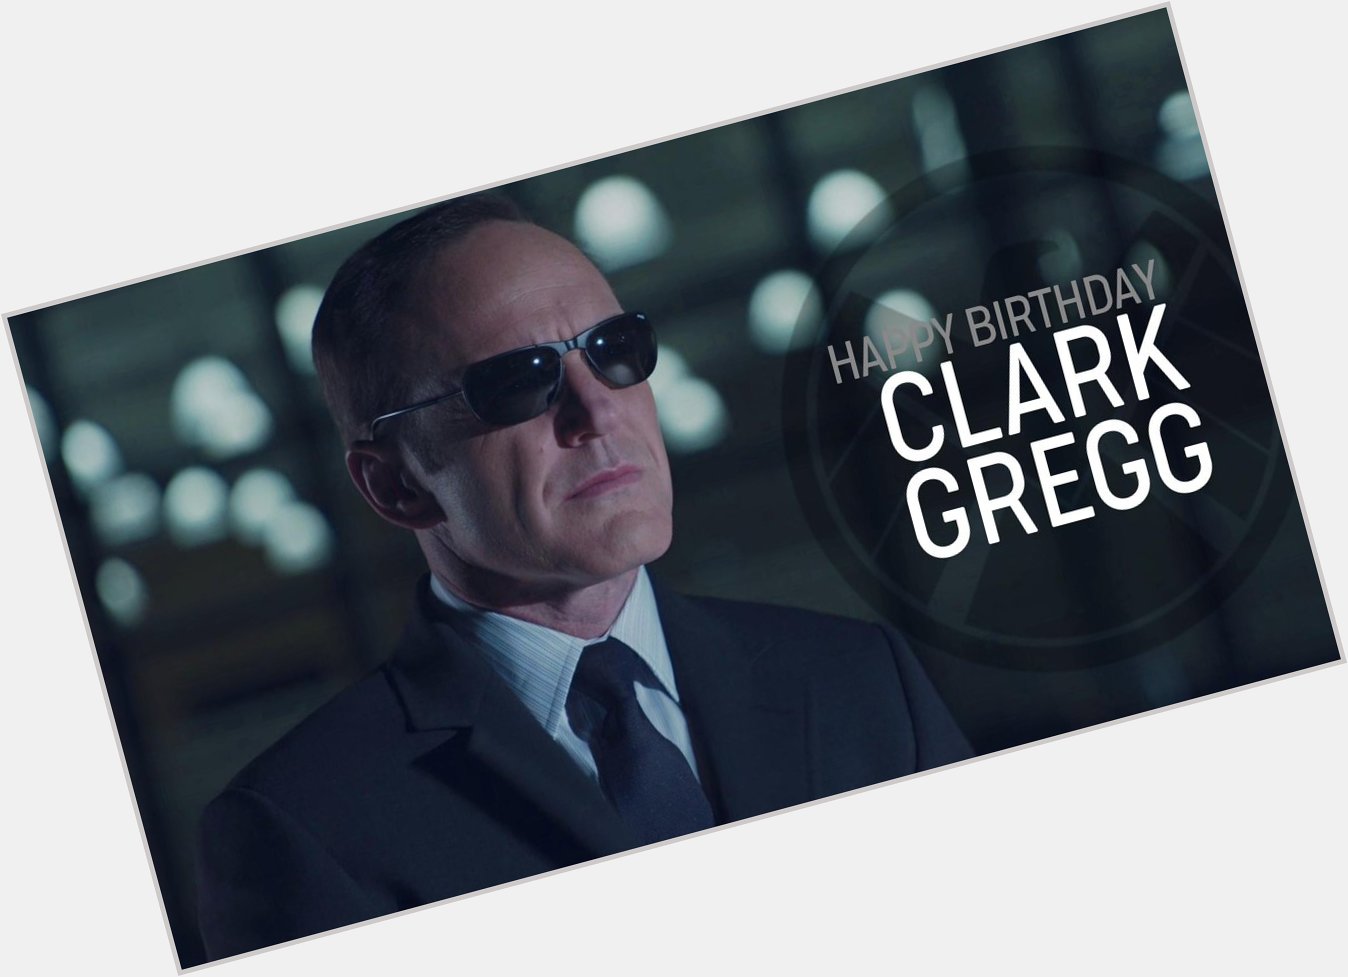 Der Schauspieler von Agent Phil Coulson,
CLARK GREGG
wurde gestern 57 Jahre alt.

Happy Birthday ! 